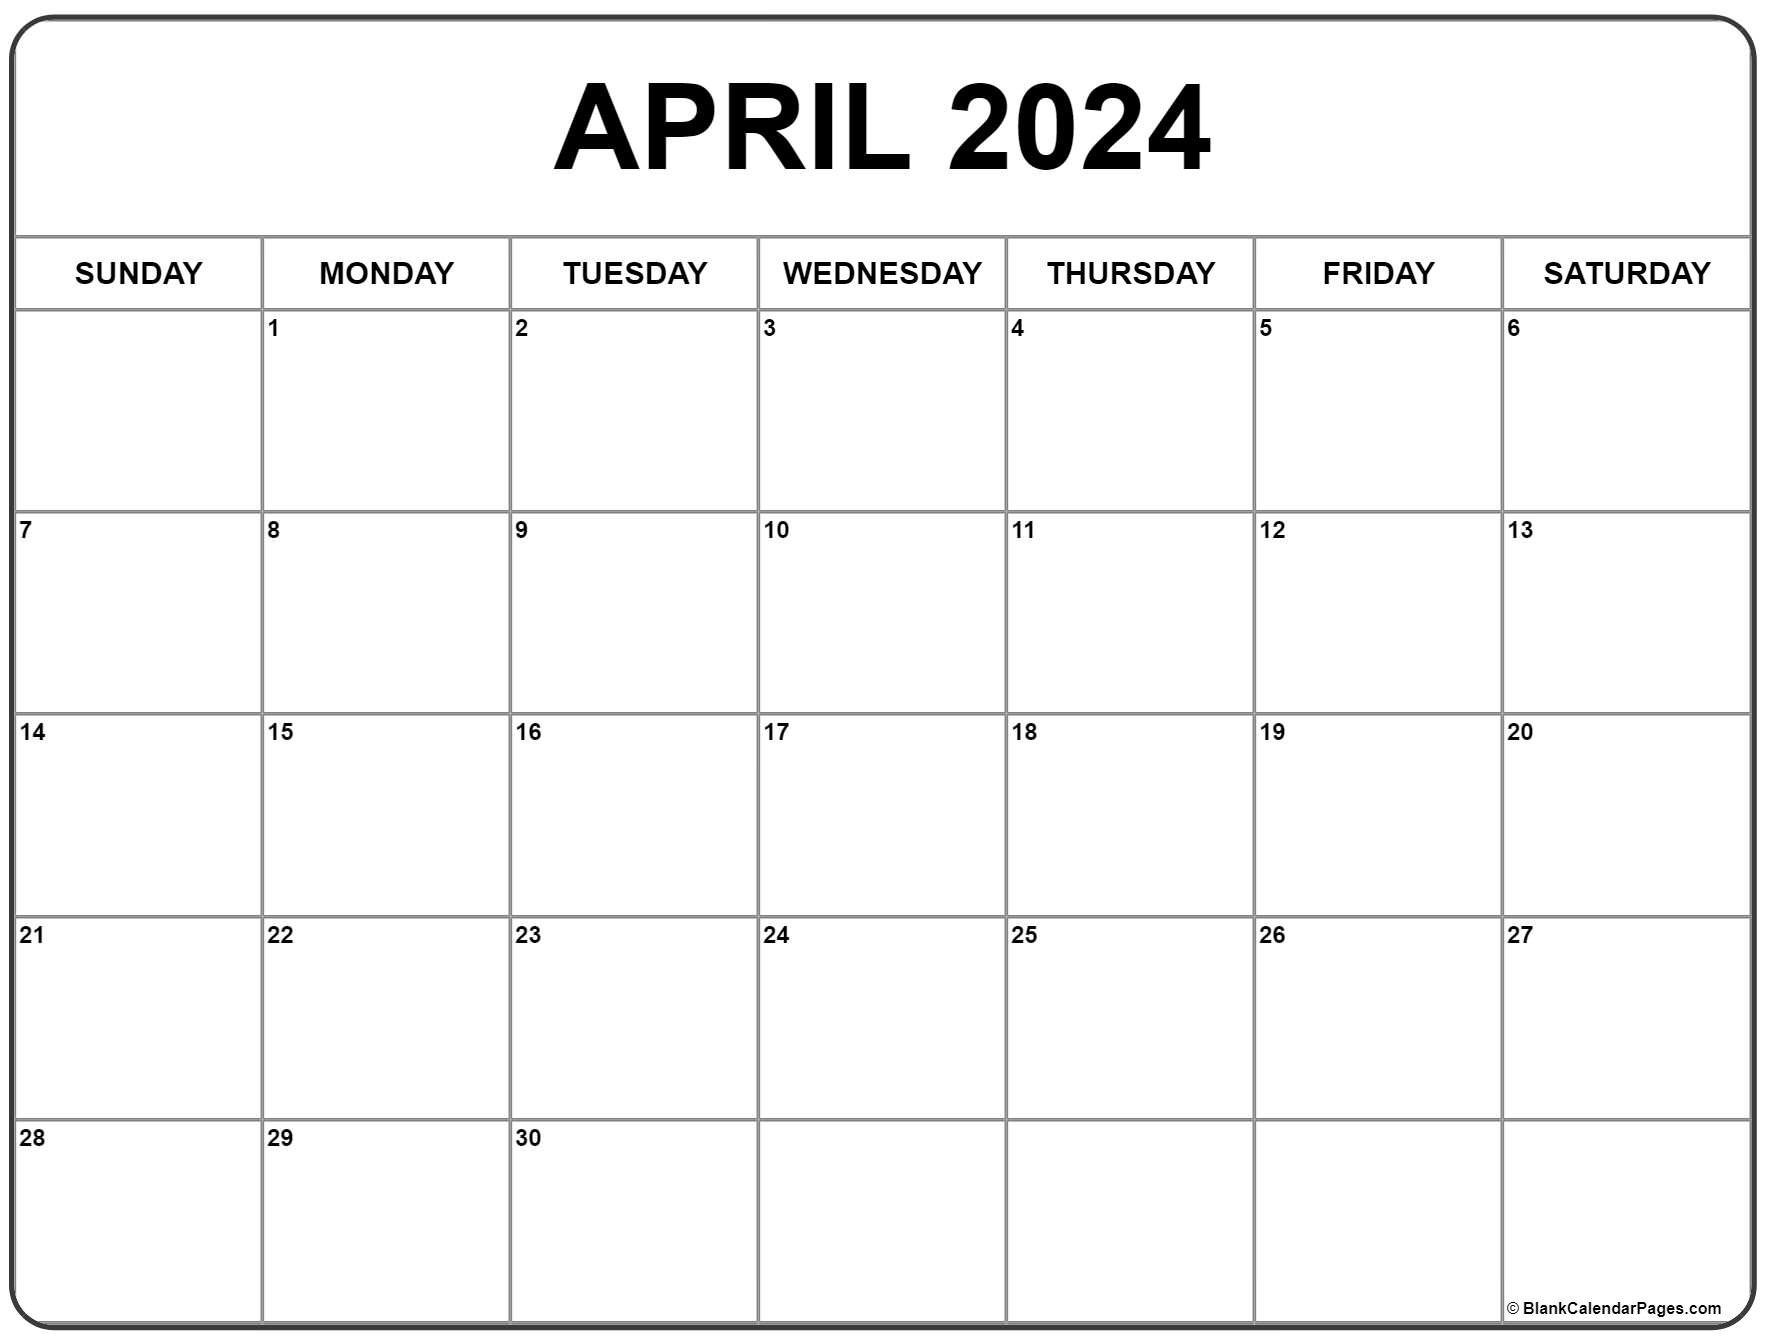 April 2024 Calendar | Free Printable Calendar for Calendar 2024 Printable Free April